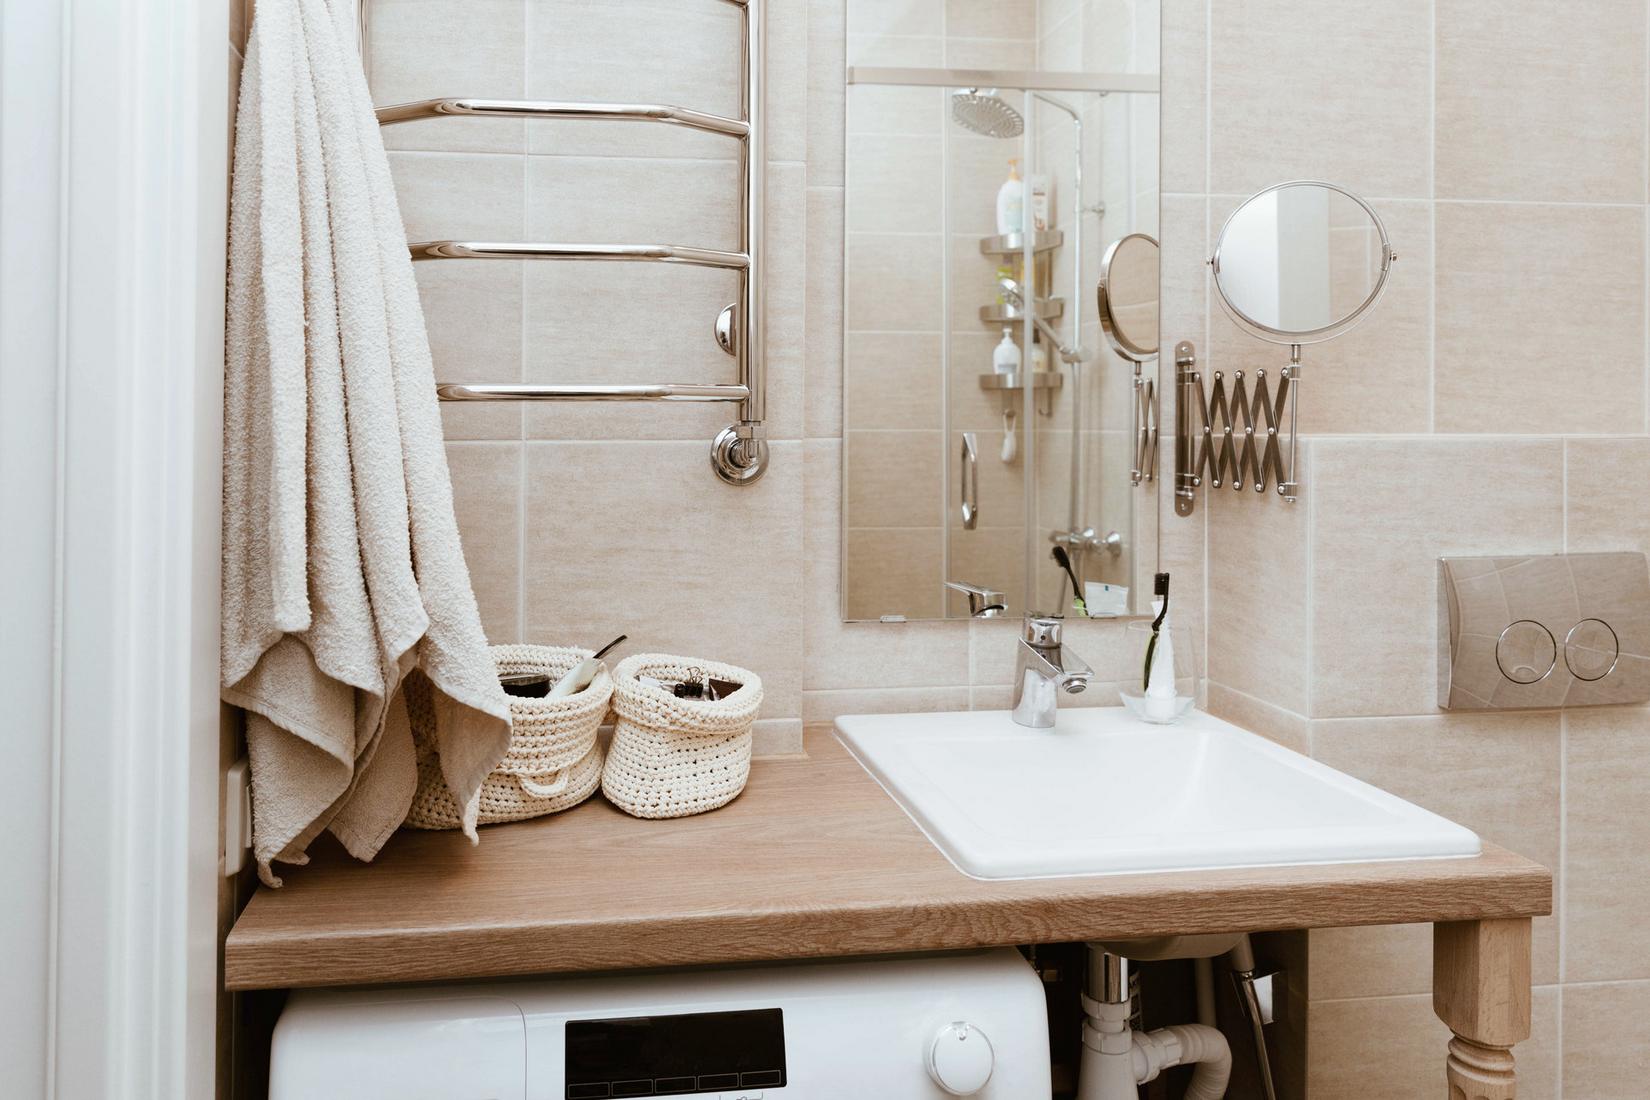 Mặt bàn gỗ kết hợp bồn rửa tay nhỏ gọn, bên trên là tấm gương treo dọc tường giúp phản chiếu không gian phòng tắm. Một chiếc máy giặt được bố trí gọn gàng ngay dưới mặt bàn giúp tiết kiệm diện tích.